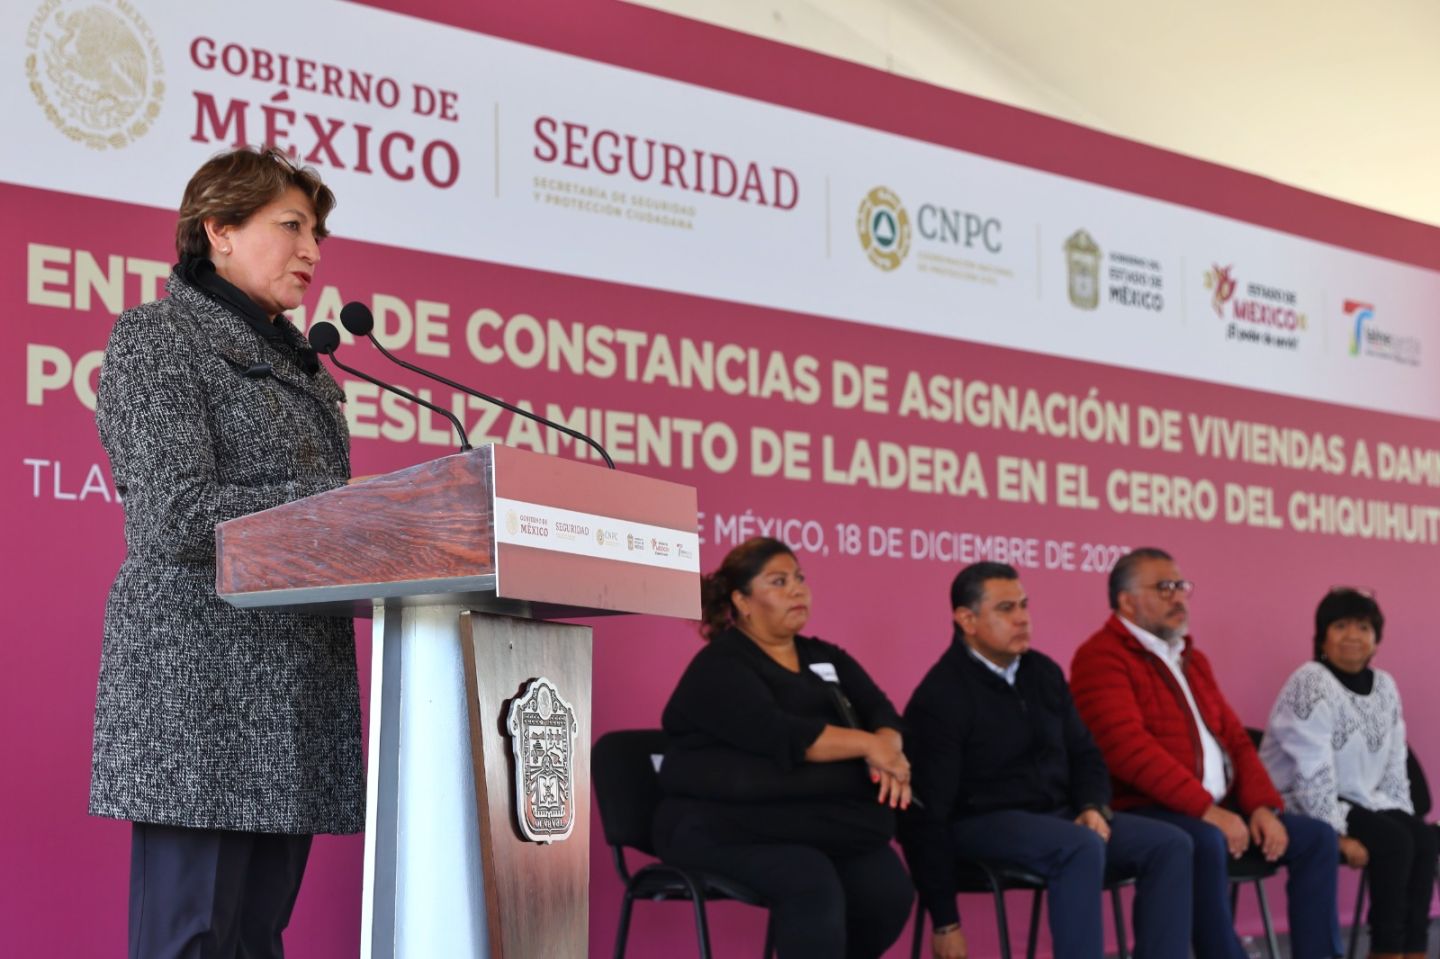 Gobernadora Delfina Gómez entrega 210 viviendas a familias damnificadas por el desgajamiento del Cerro del Chiquihuite